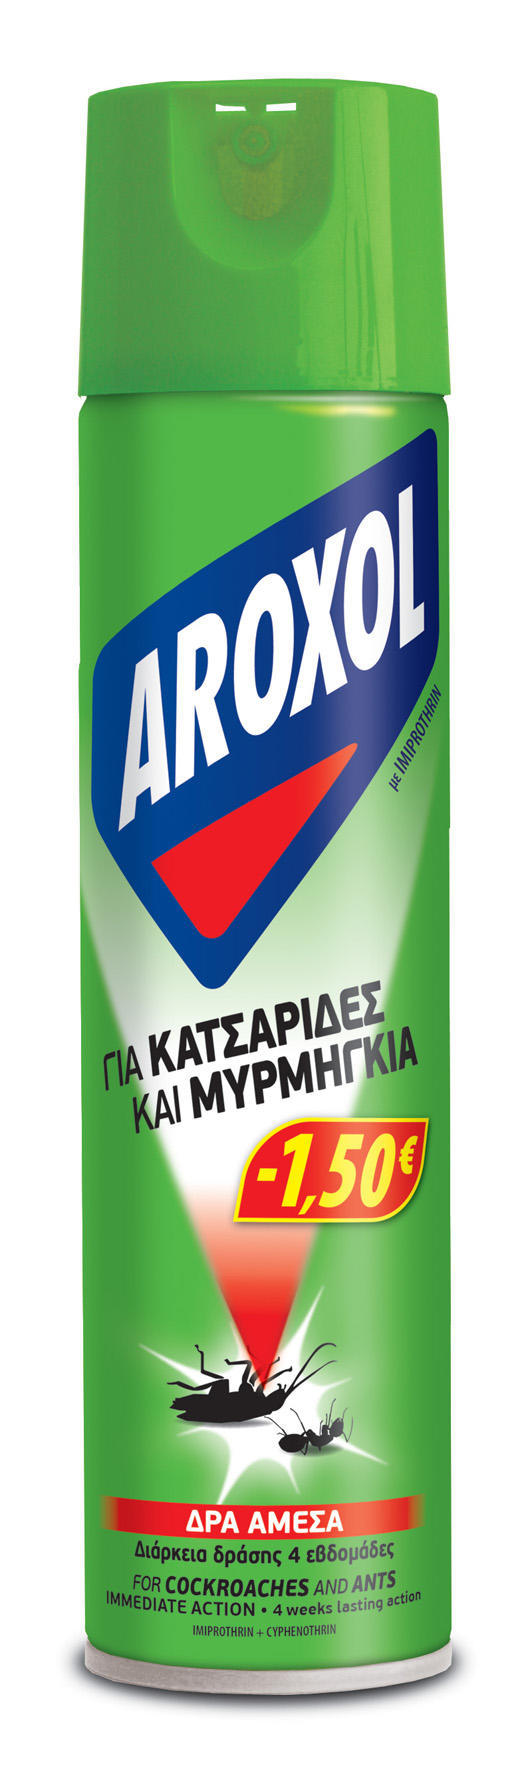 Κατσαριδοκτόνο Aroxol (300ml) -1,50€